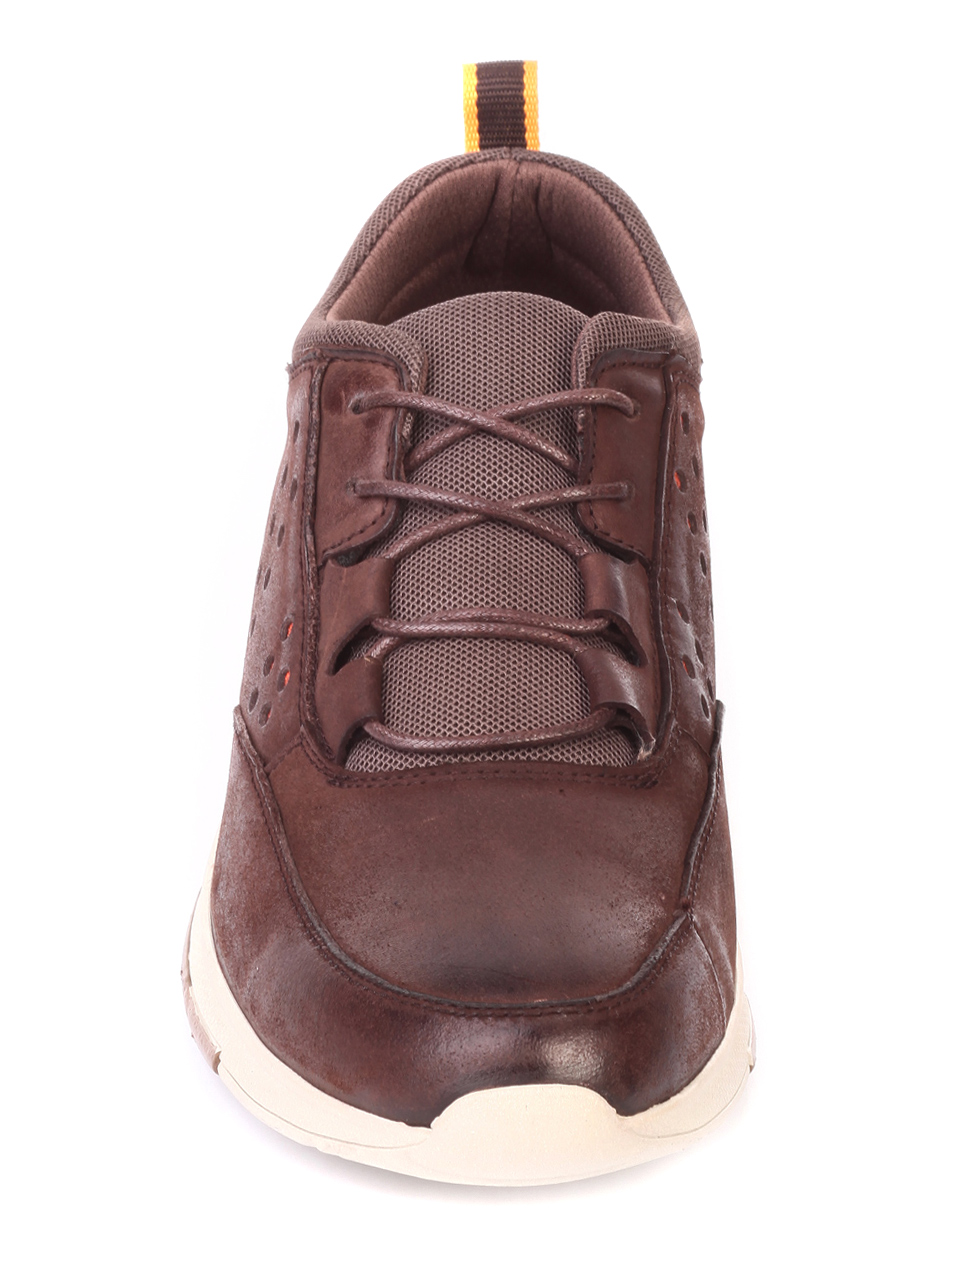 Ежедневни мъжки обувки от естествена кожа 7X-19723 coffee